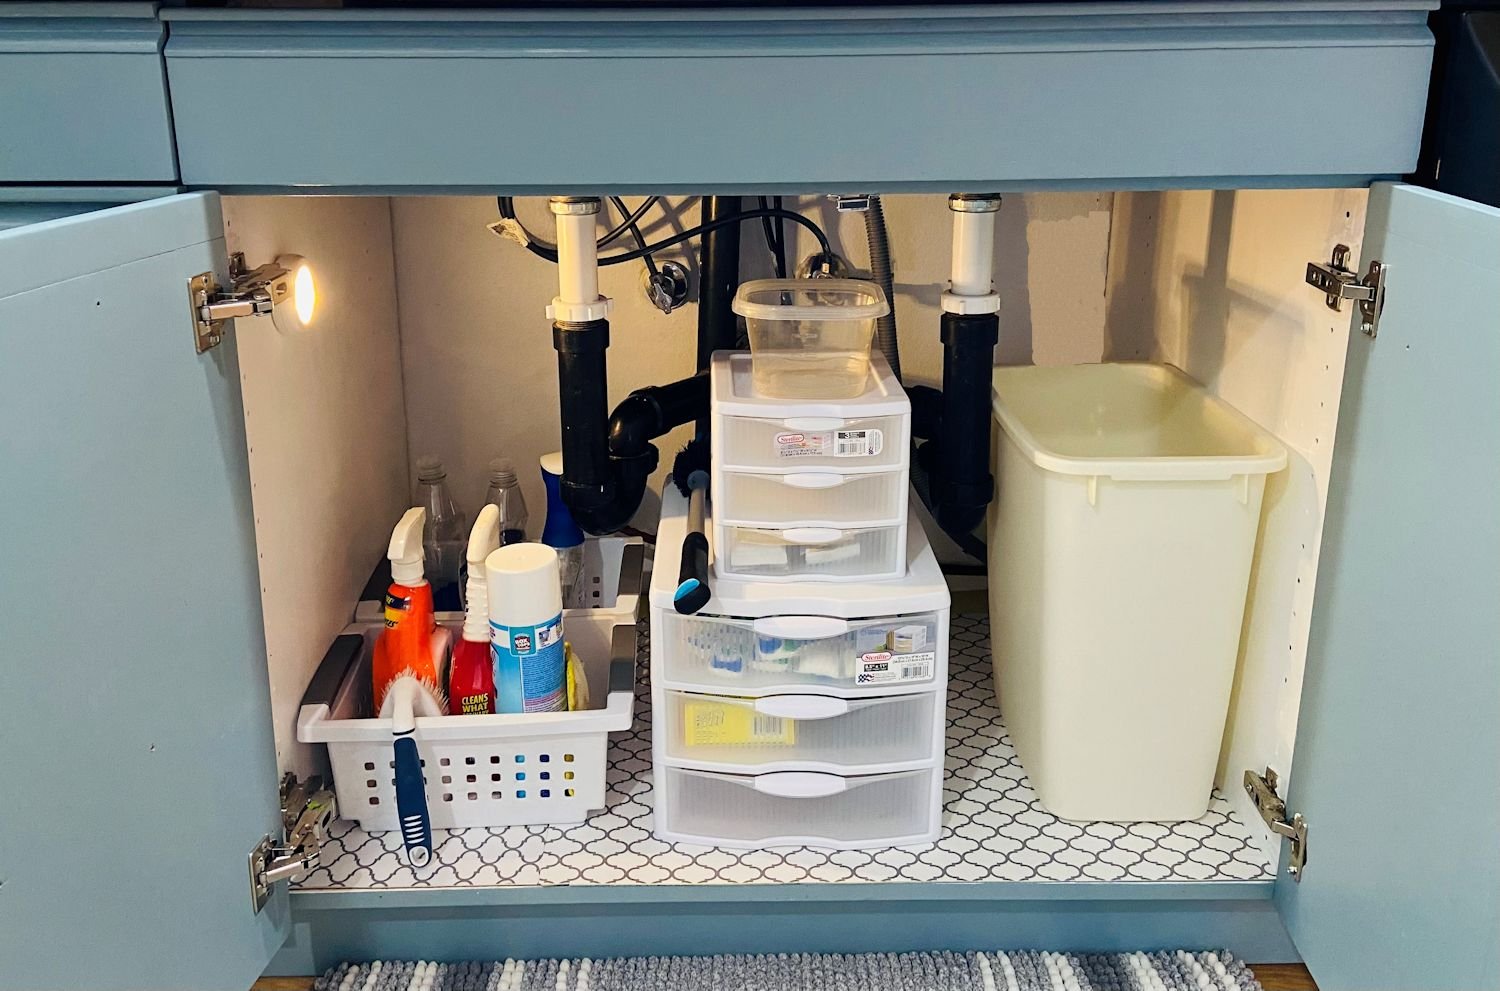 Inexpensive Storage Ideas To Make The Most Of A Kitchen Sink Cabinet  Diy kitchen  storage, Kitchen hacks organization, Under sink storage